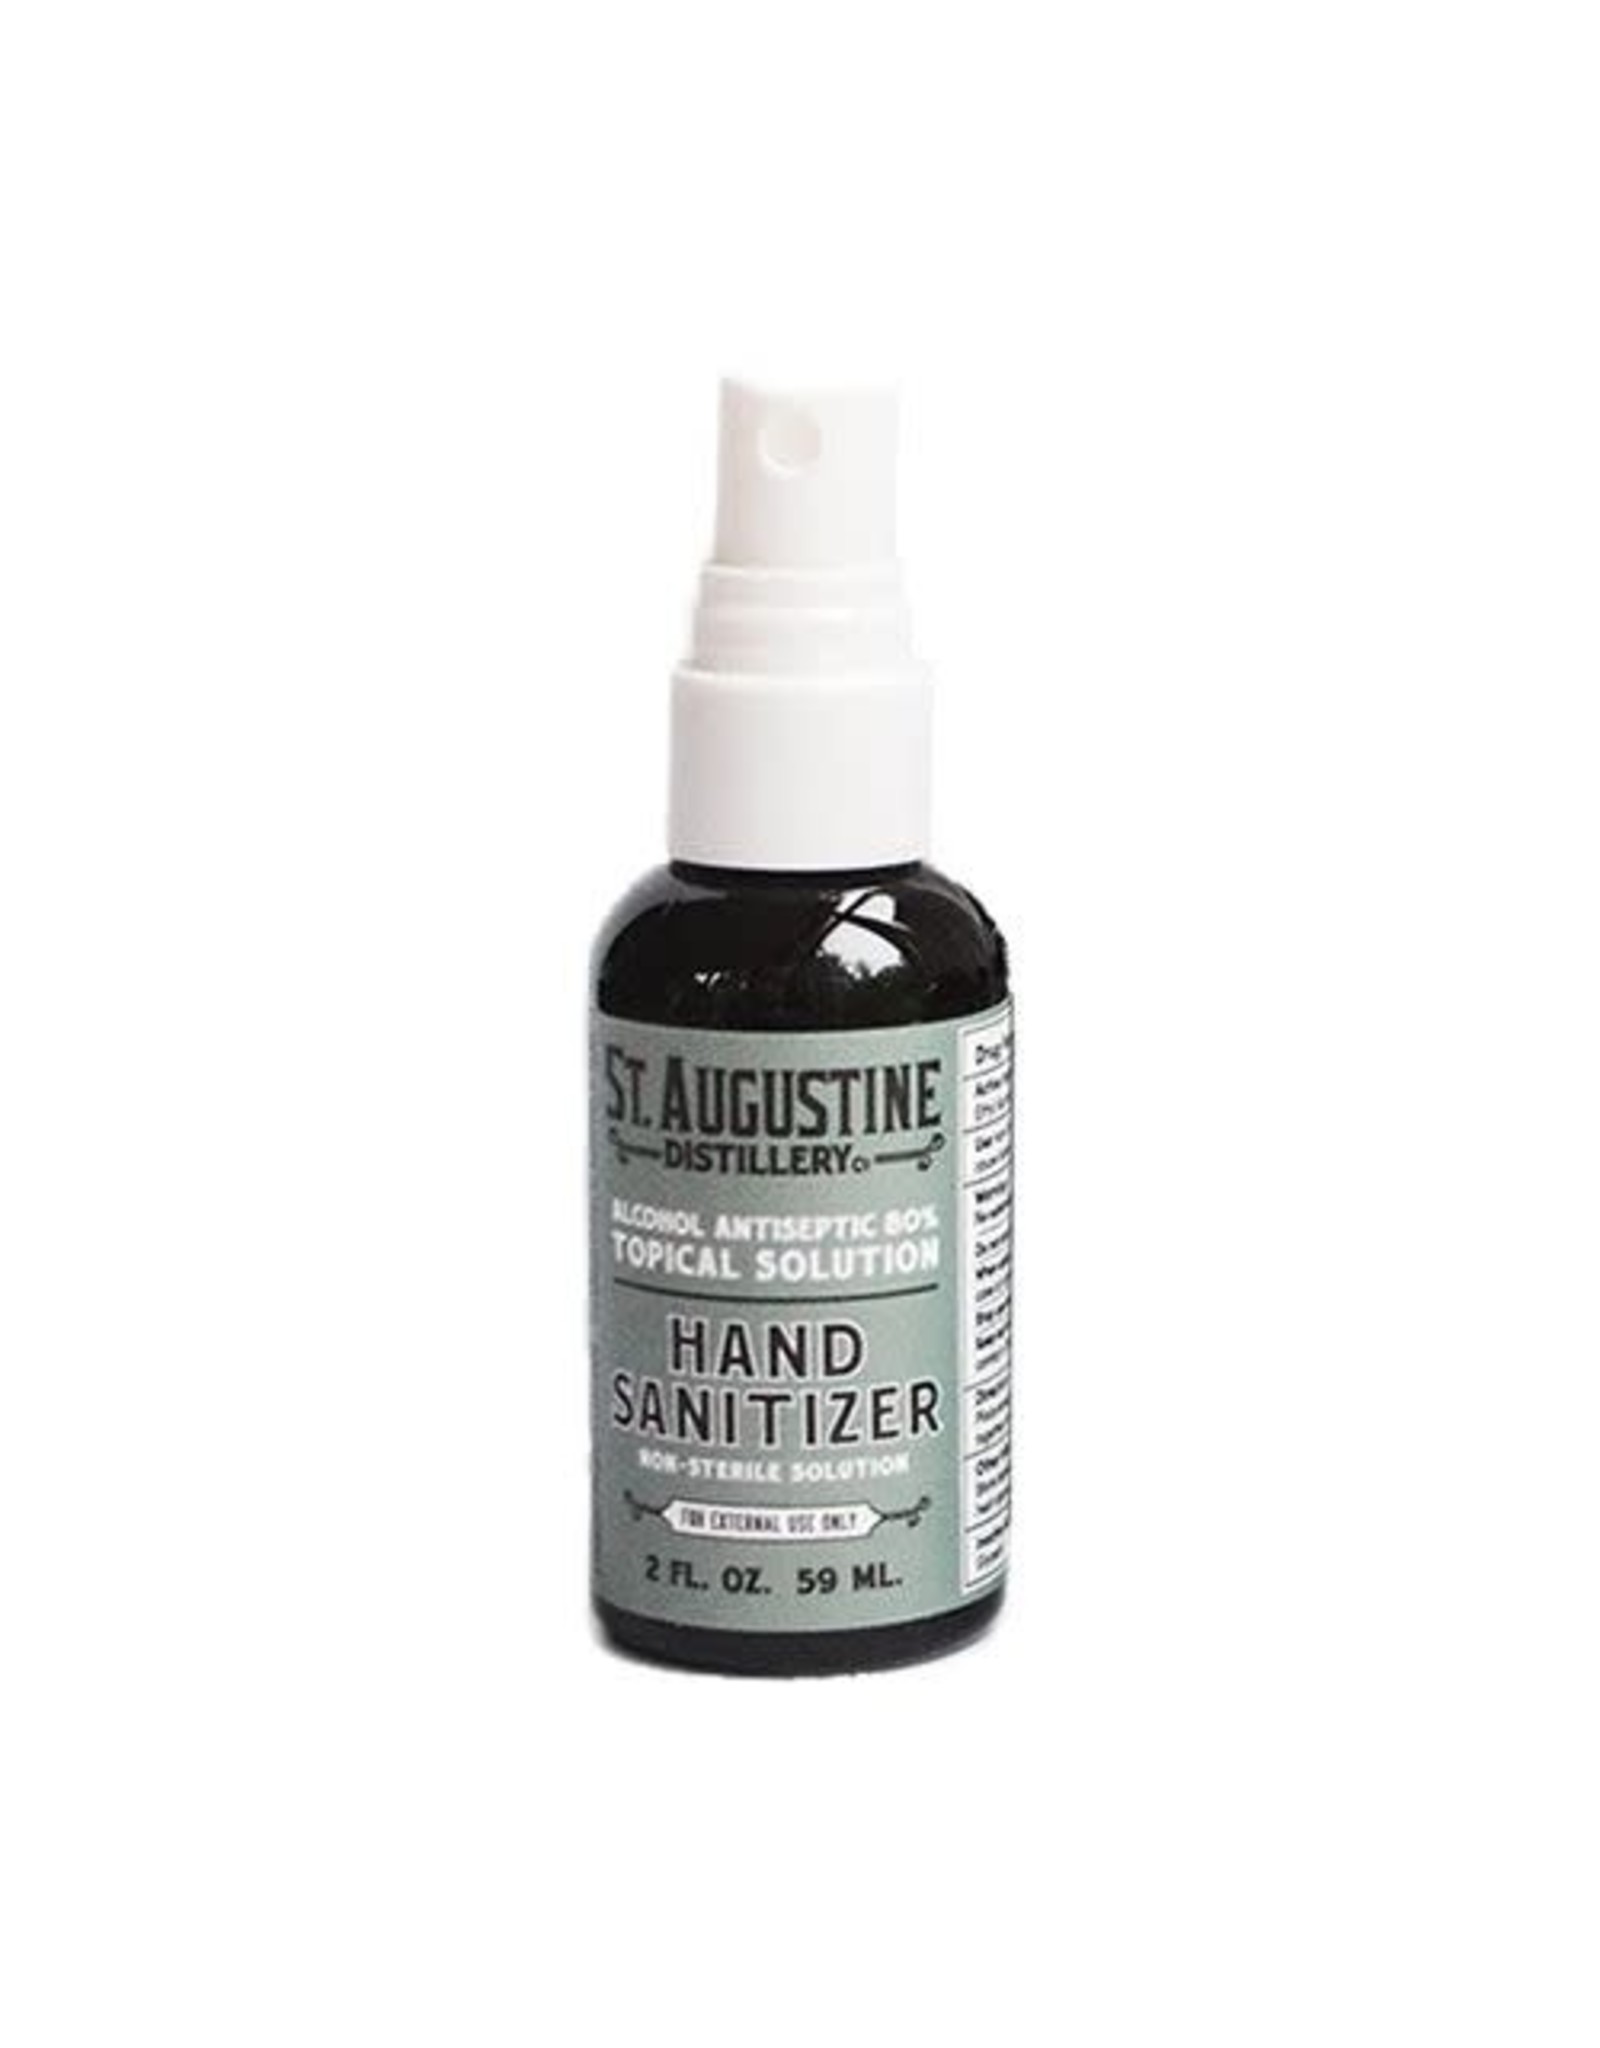 USA Hand Sanitizer from St. Augustine Distillery 2oz Spray